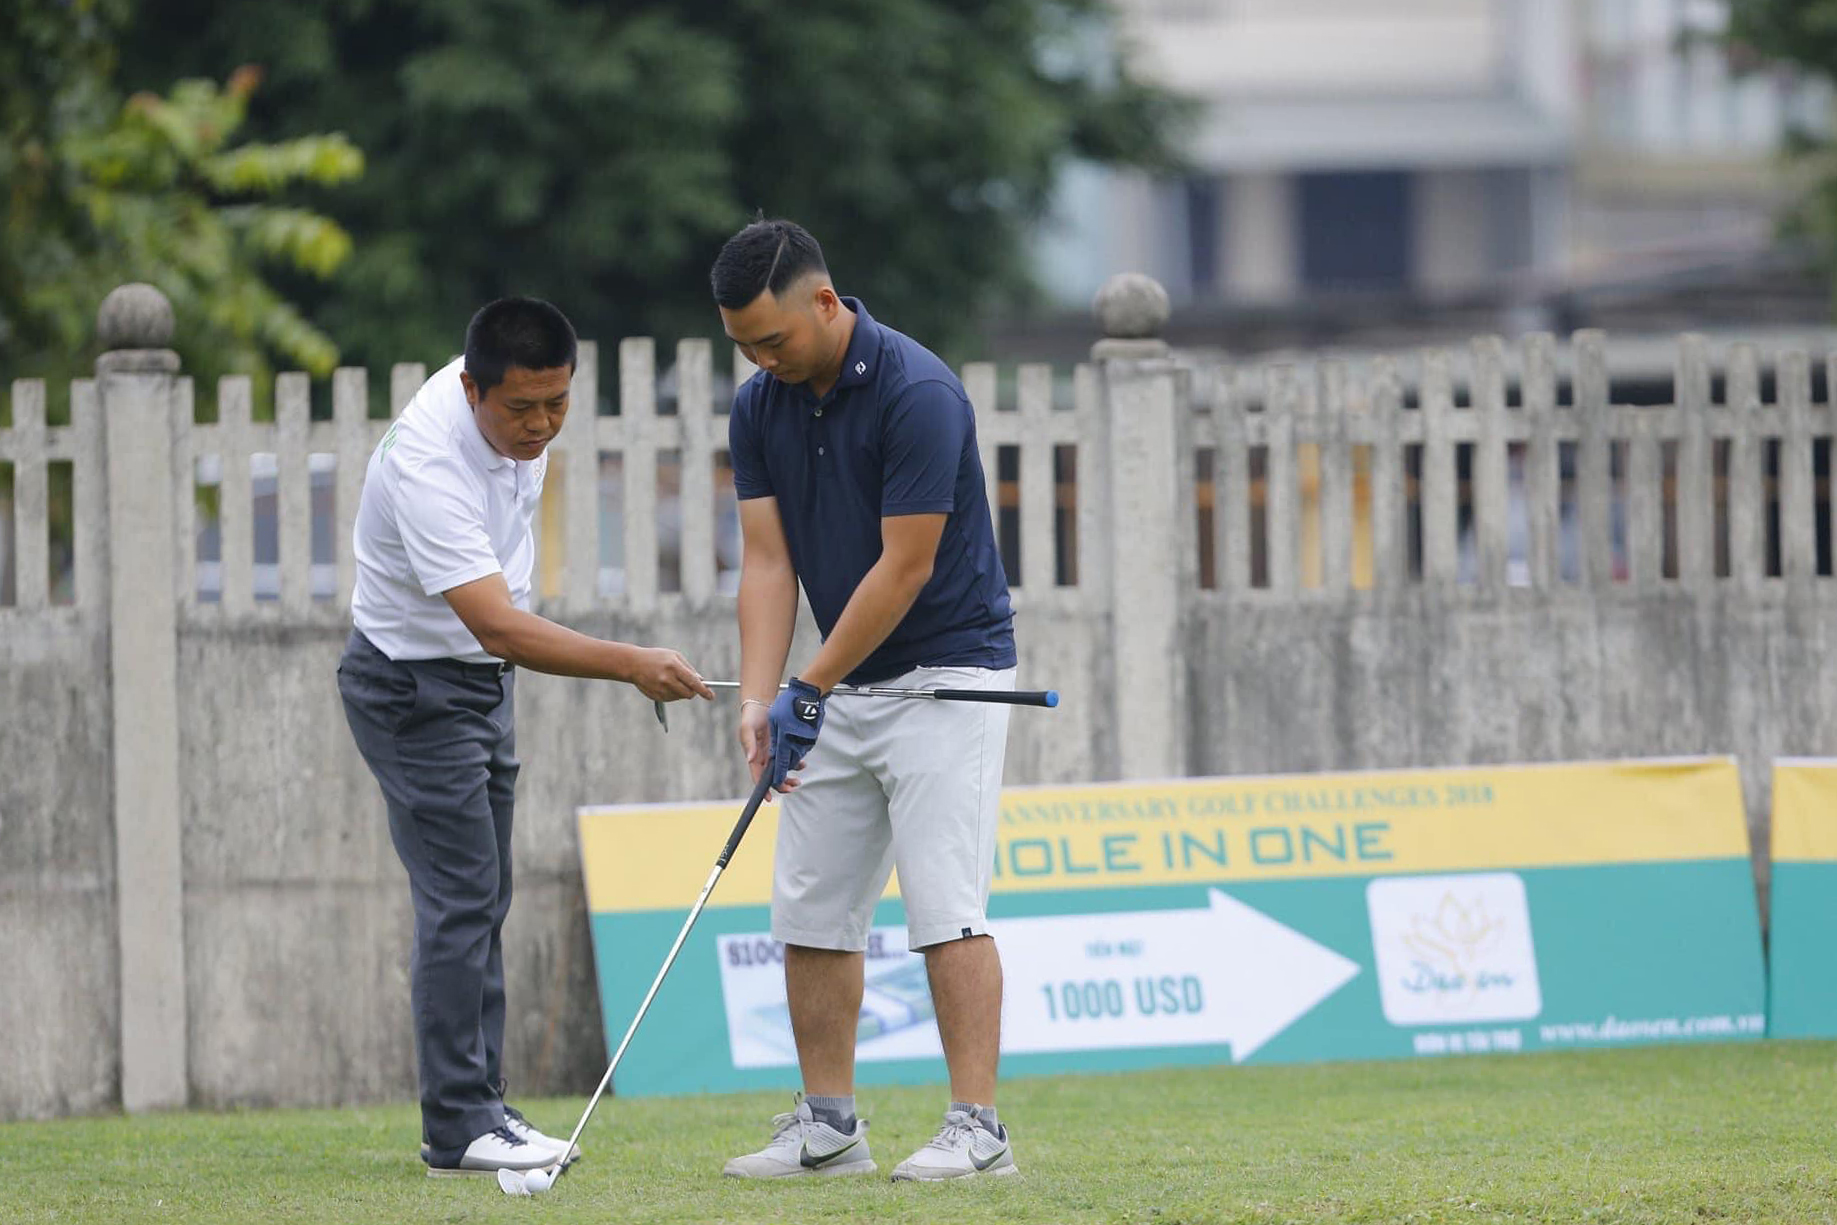 Đôi nét về thực trạng dạy golf hiện nay ở Việt Nam